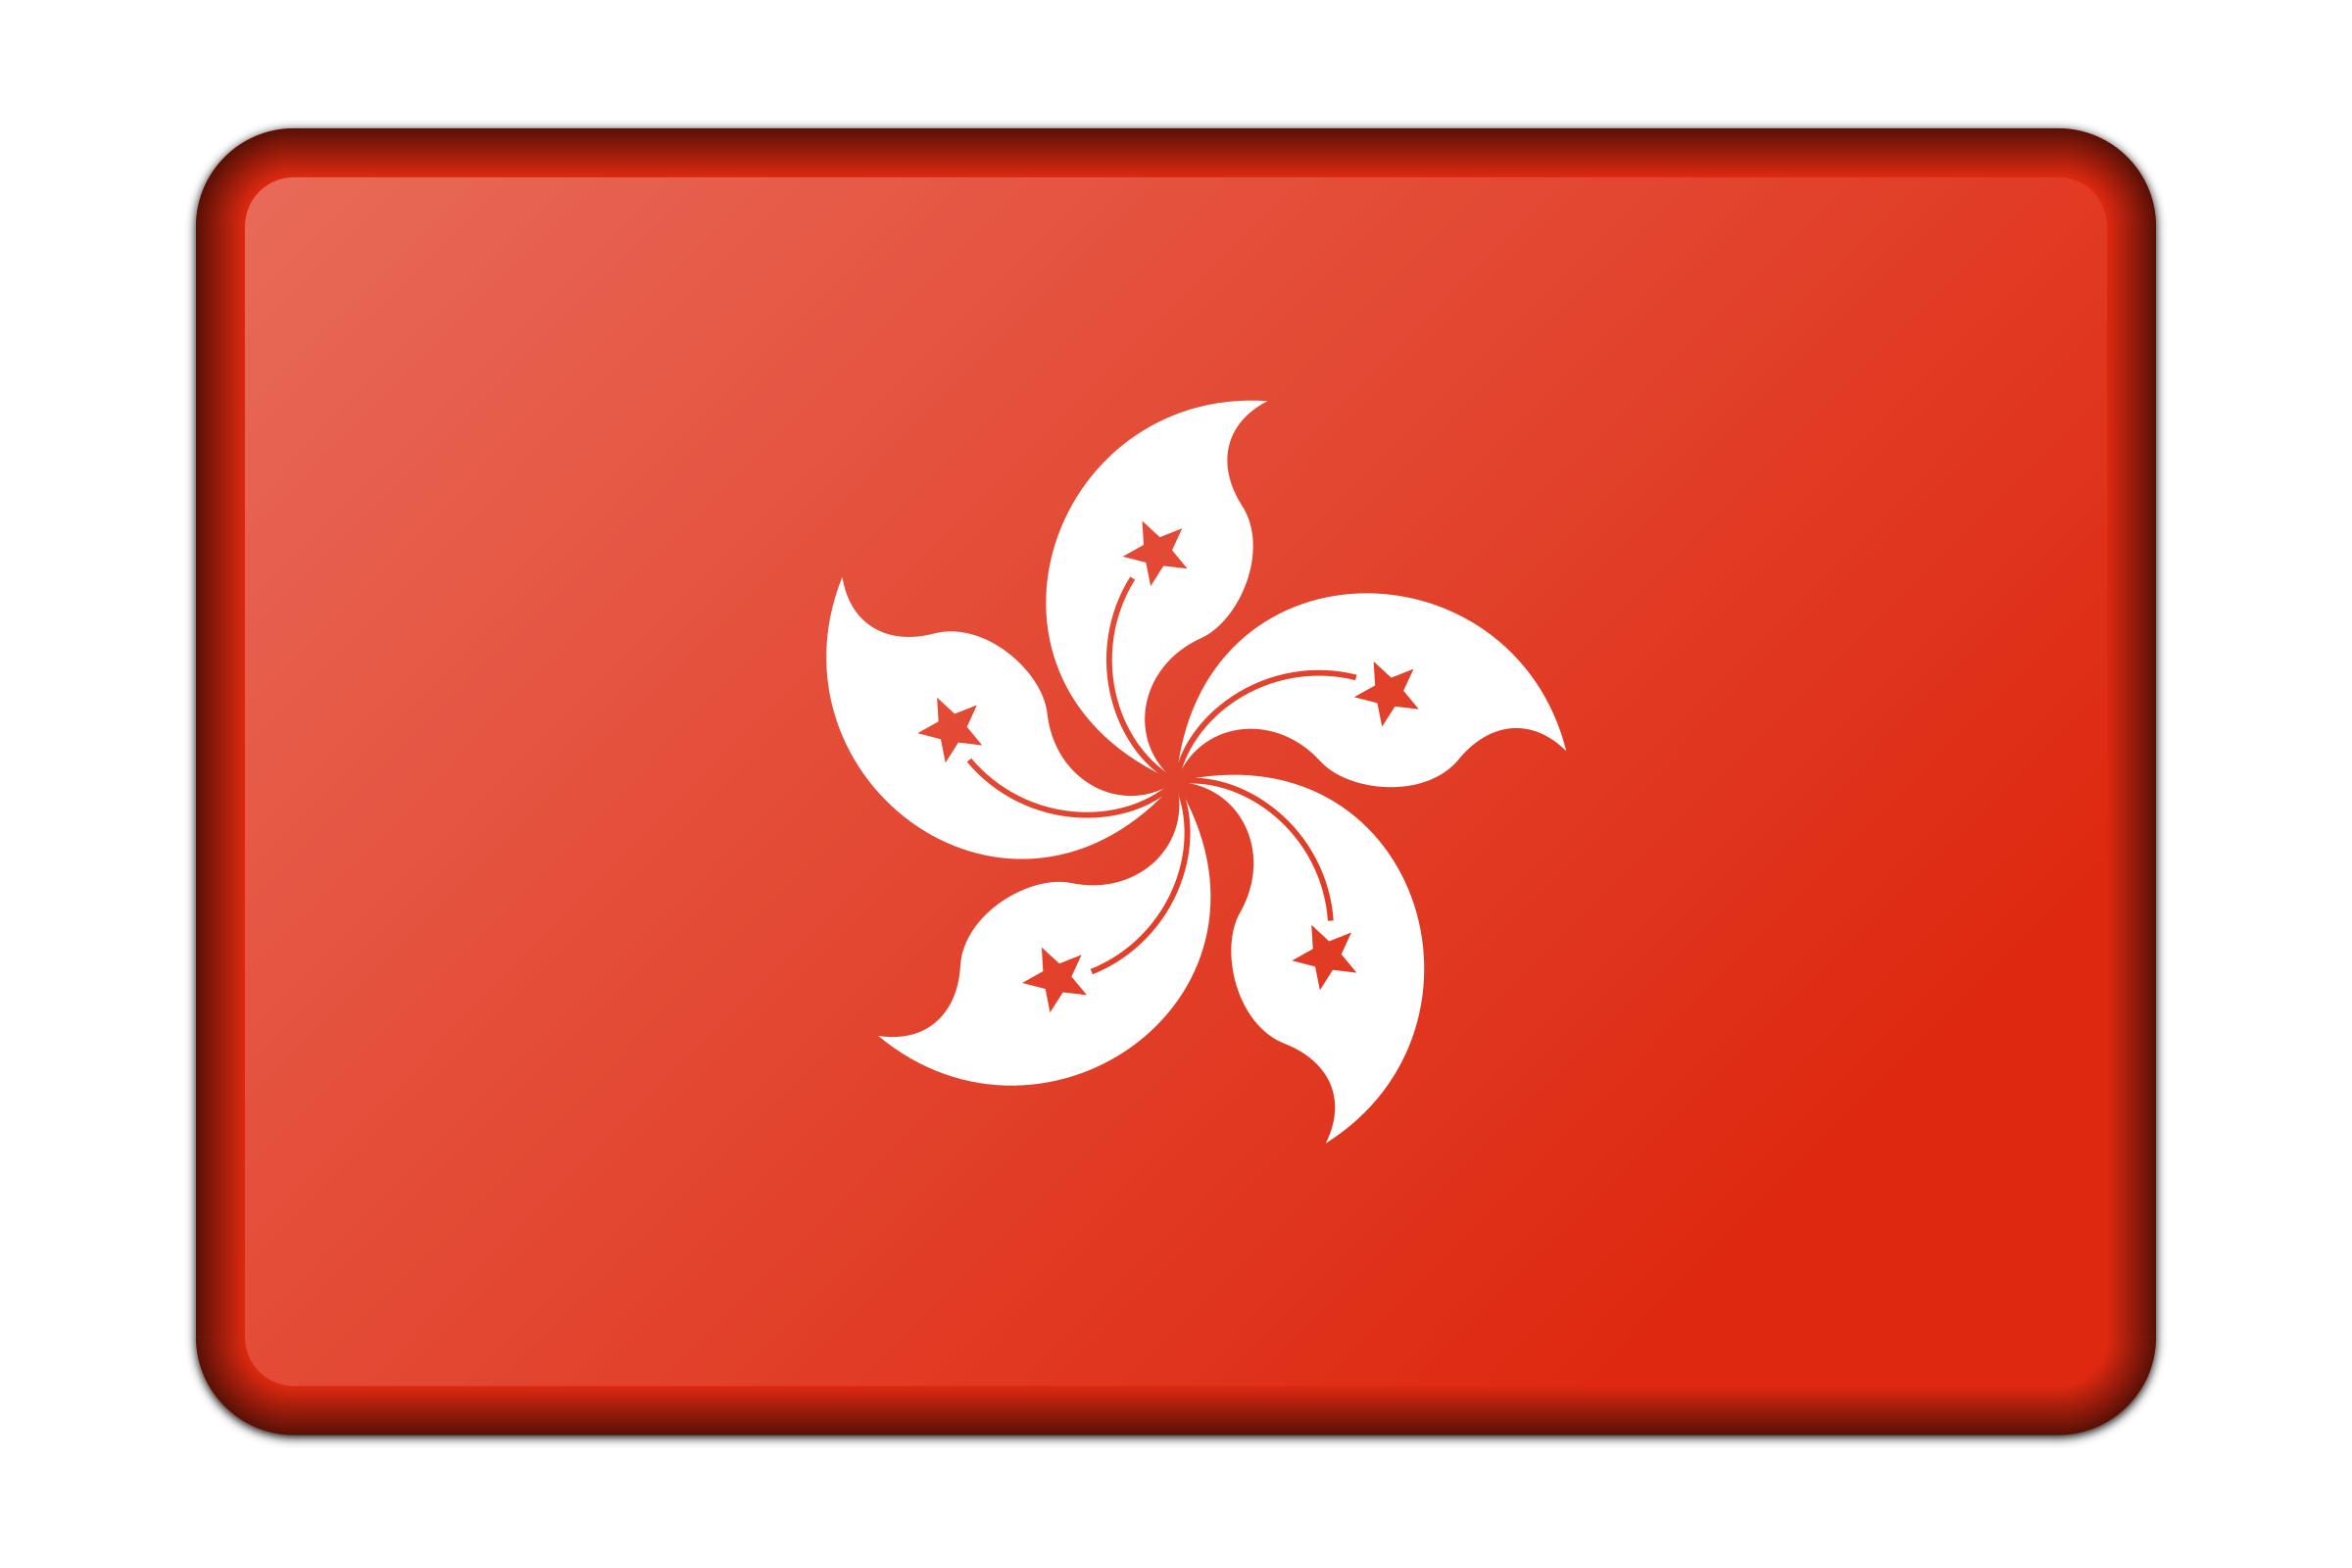 Flag of Hong Kong icons